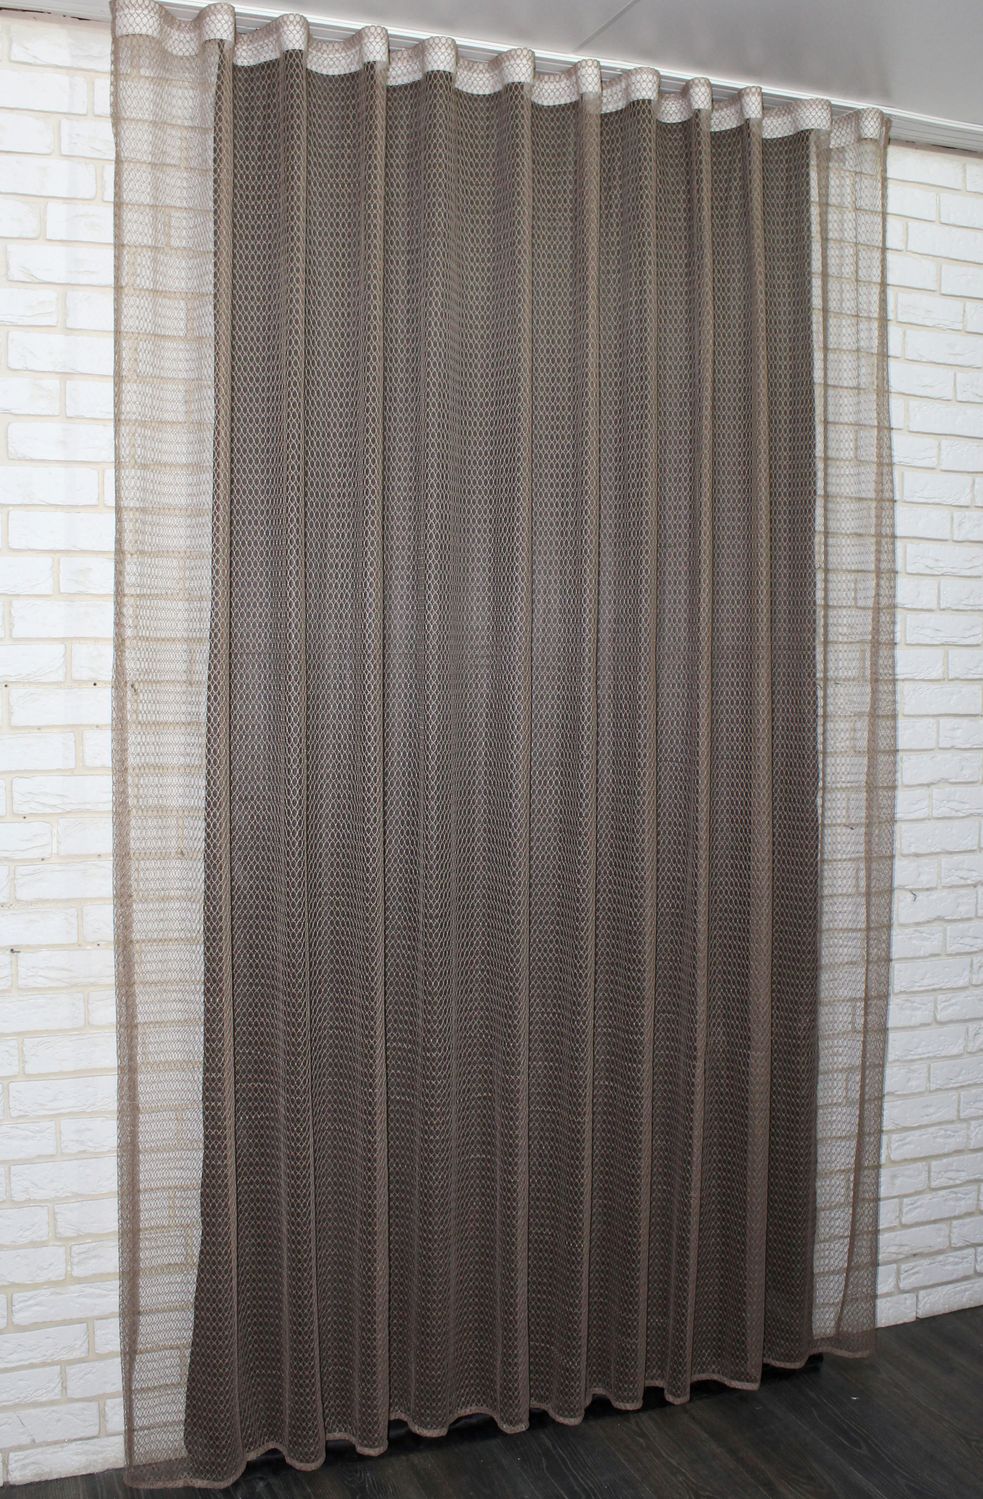 Тюль сетка, коллекция "Стелла", высотой 3м цвет капучино 960т, Тюль на метраж, Нужную Вам ширину указывайте при покупке. (Ширина набирается по длине рулона.), 3 м.